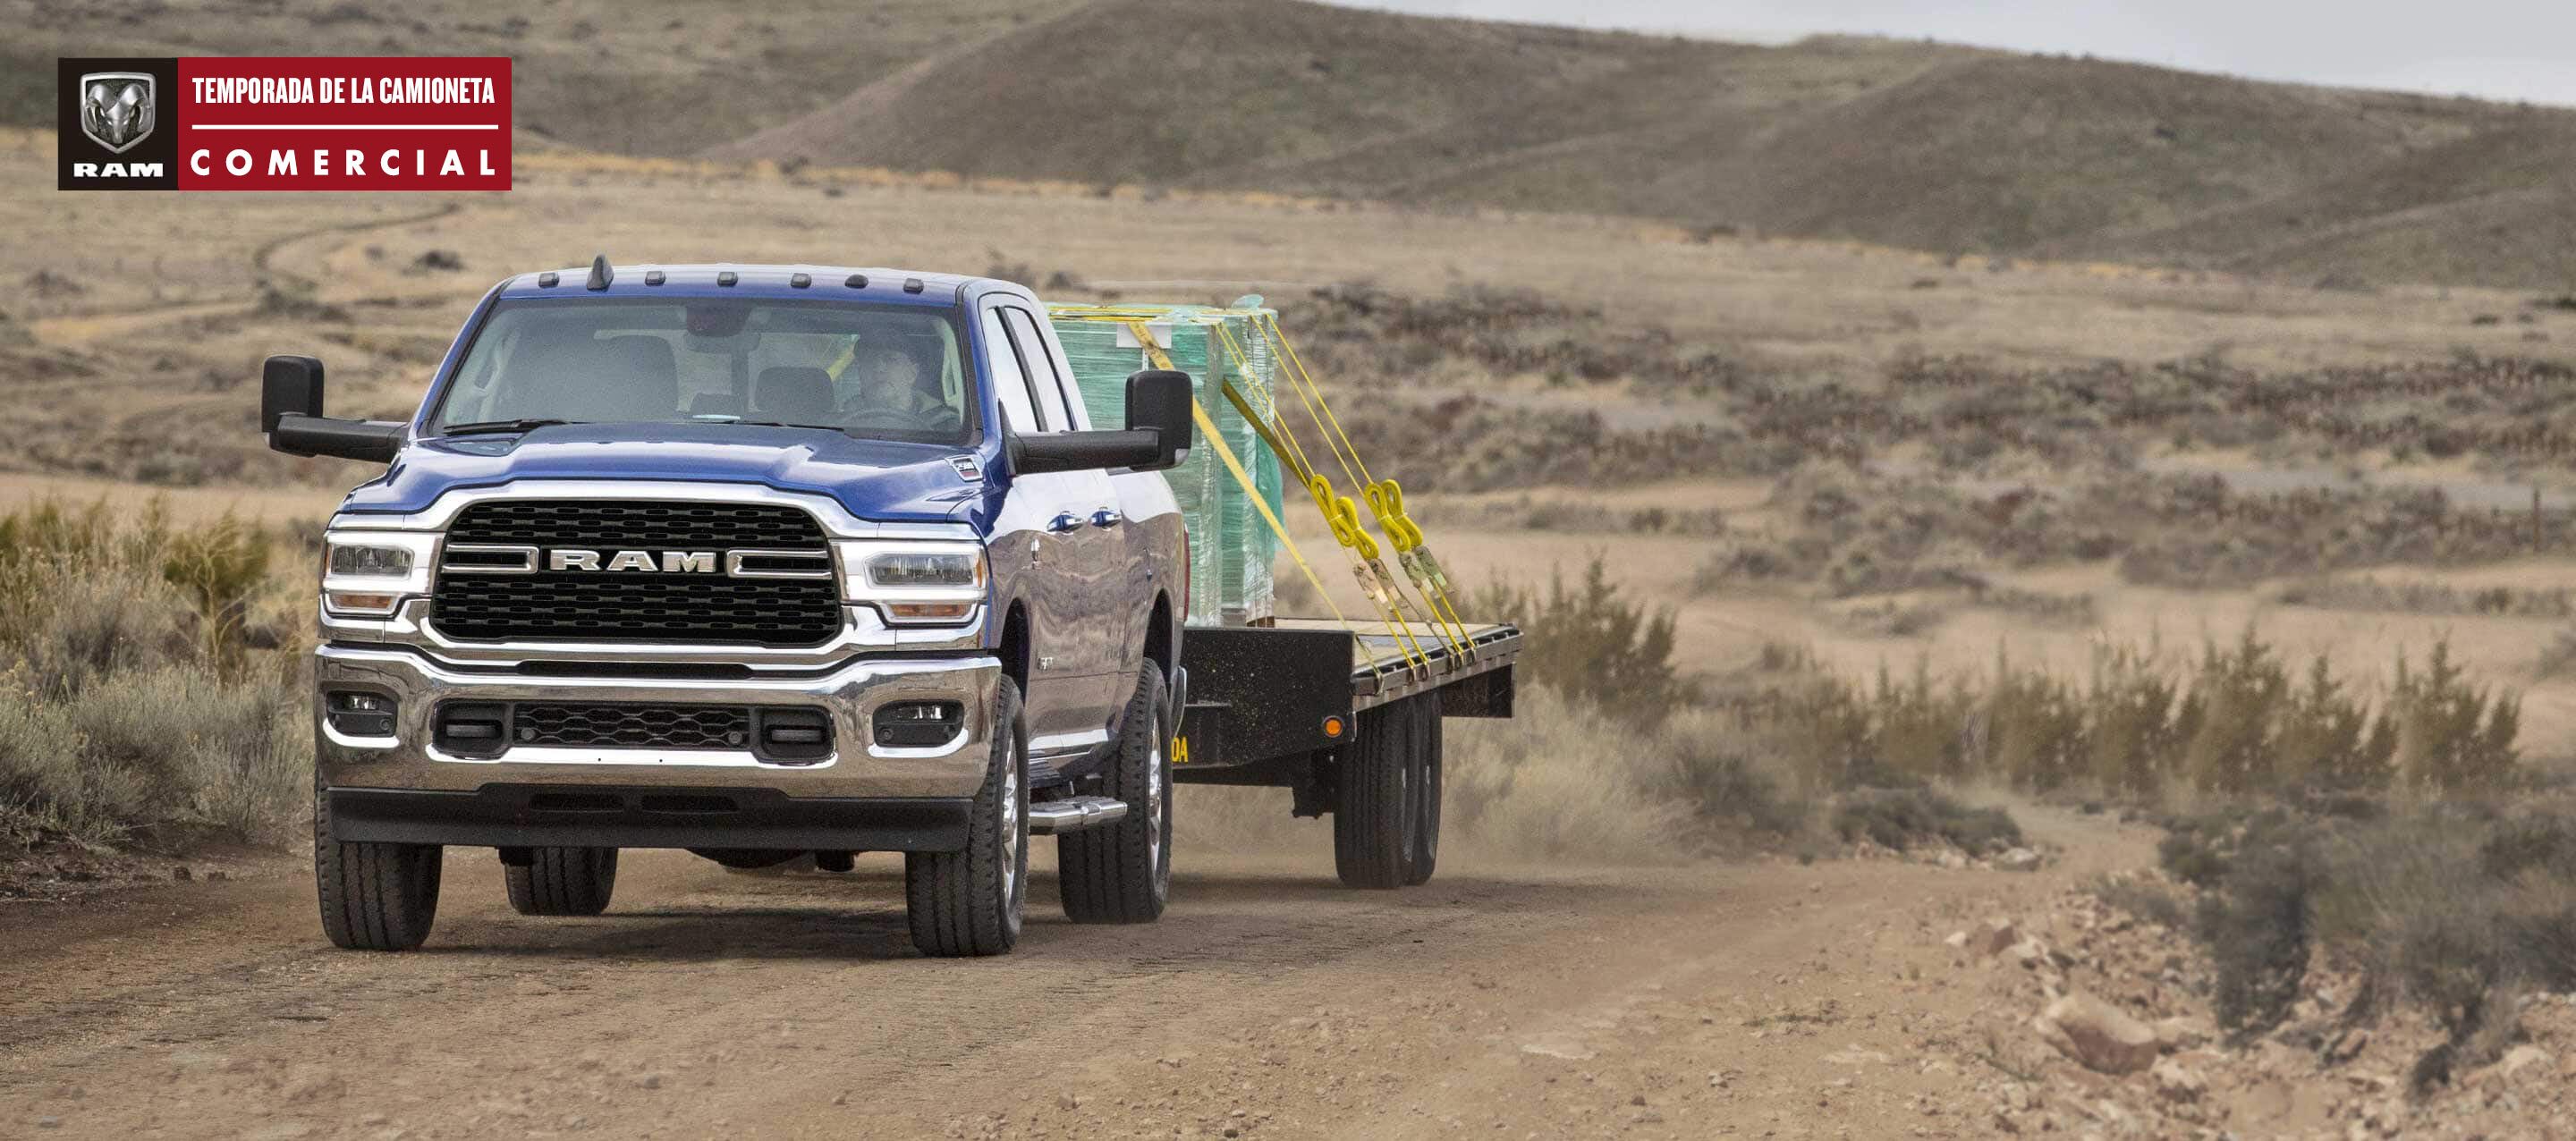 Una Ram 2500 Big Horn 4x4 Crew Cab 2022 azul circulando por una carretera sinuosa en el desierto, acarreando paneles de vidrio en un remolque de plataforma plana. Temporada de la camioneta comercial Ram.